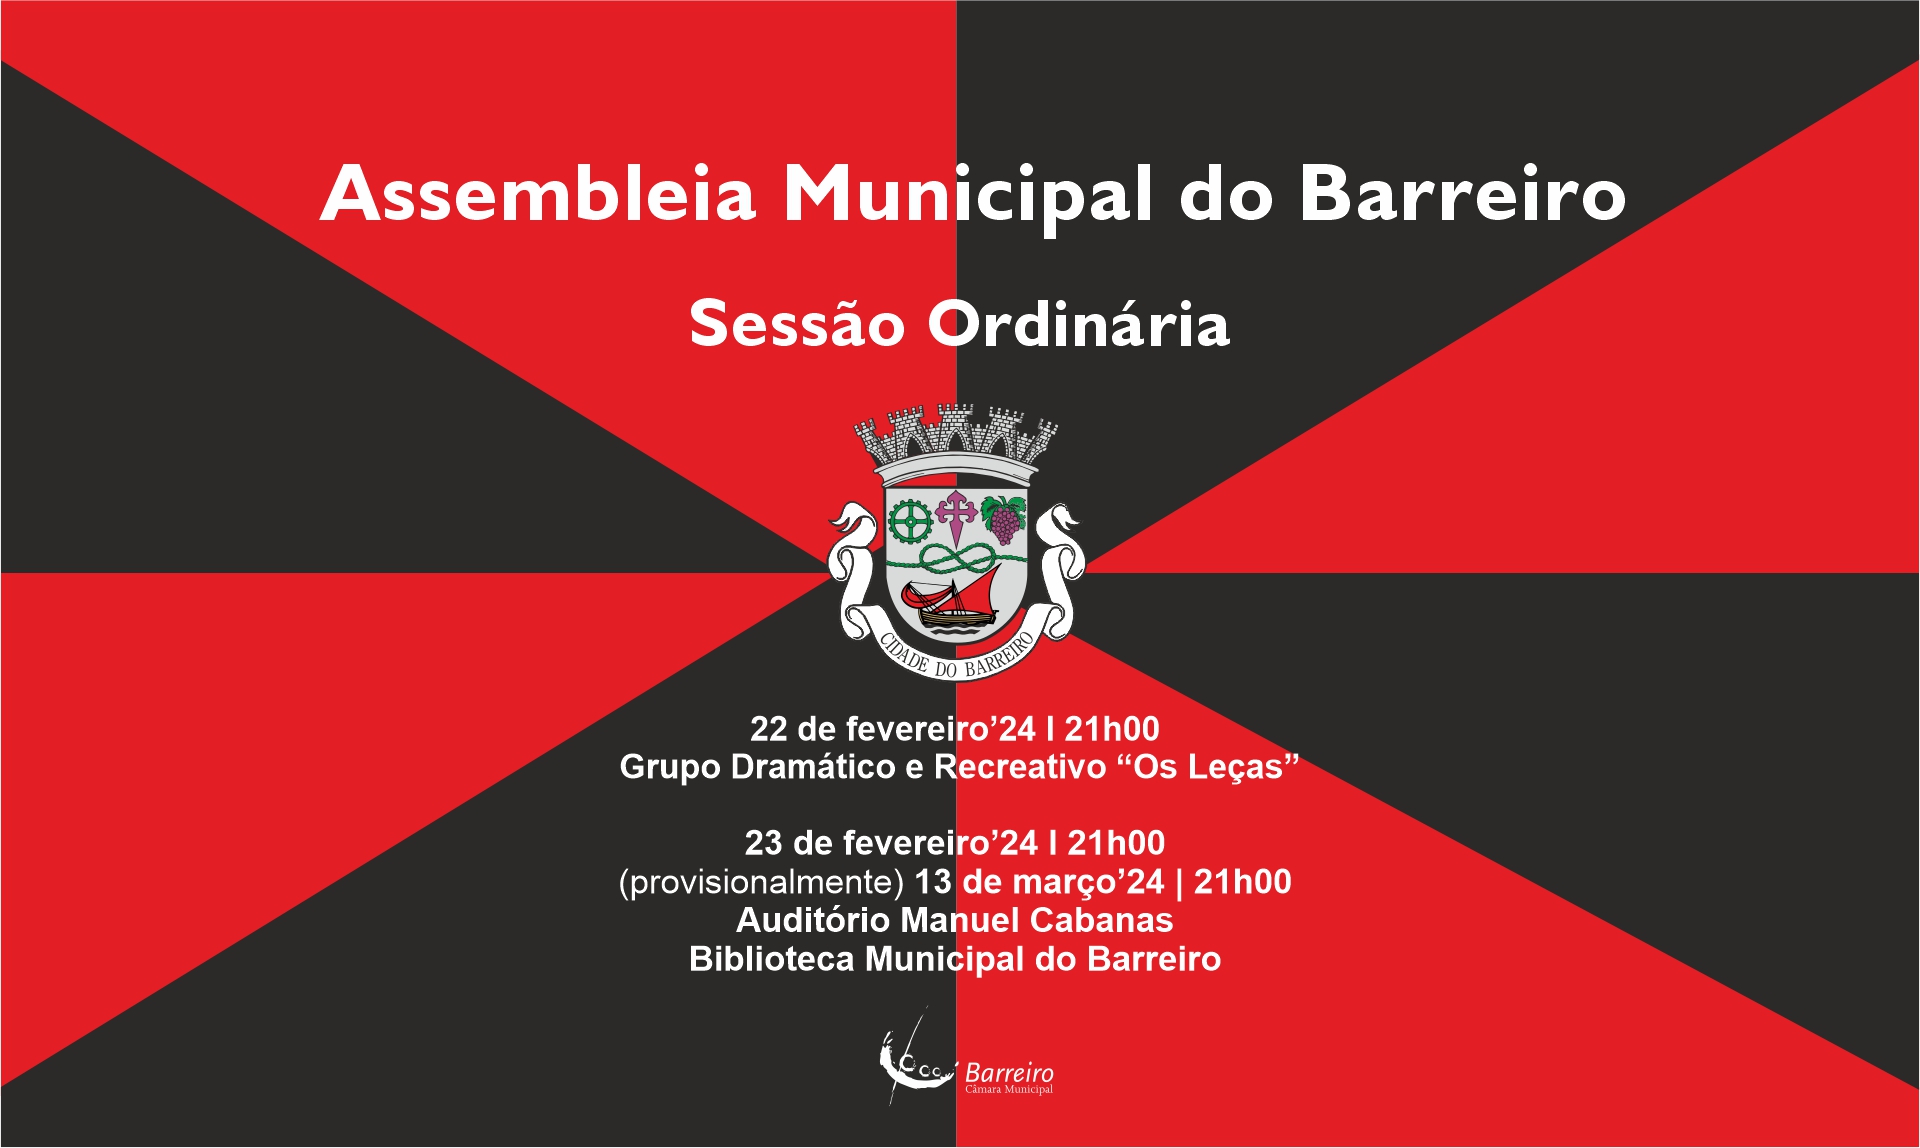 Assembleia Municipal do Barreiro | Sessão Ordinária a 22 e 23 de fevereiro e 13 de março (provisionalmente)